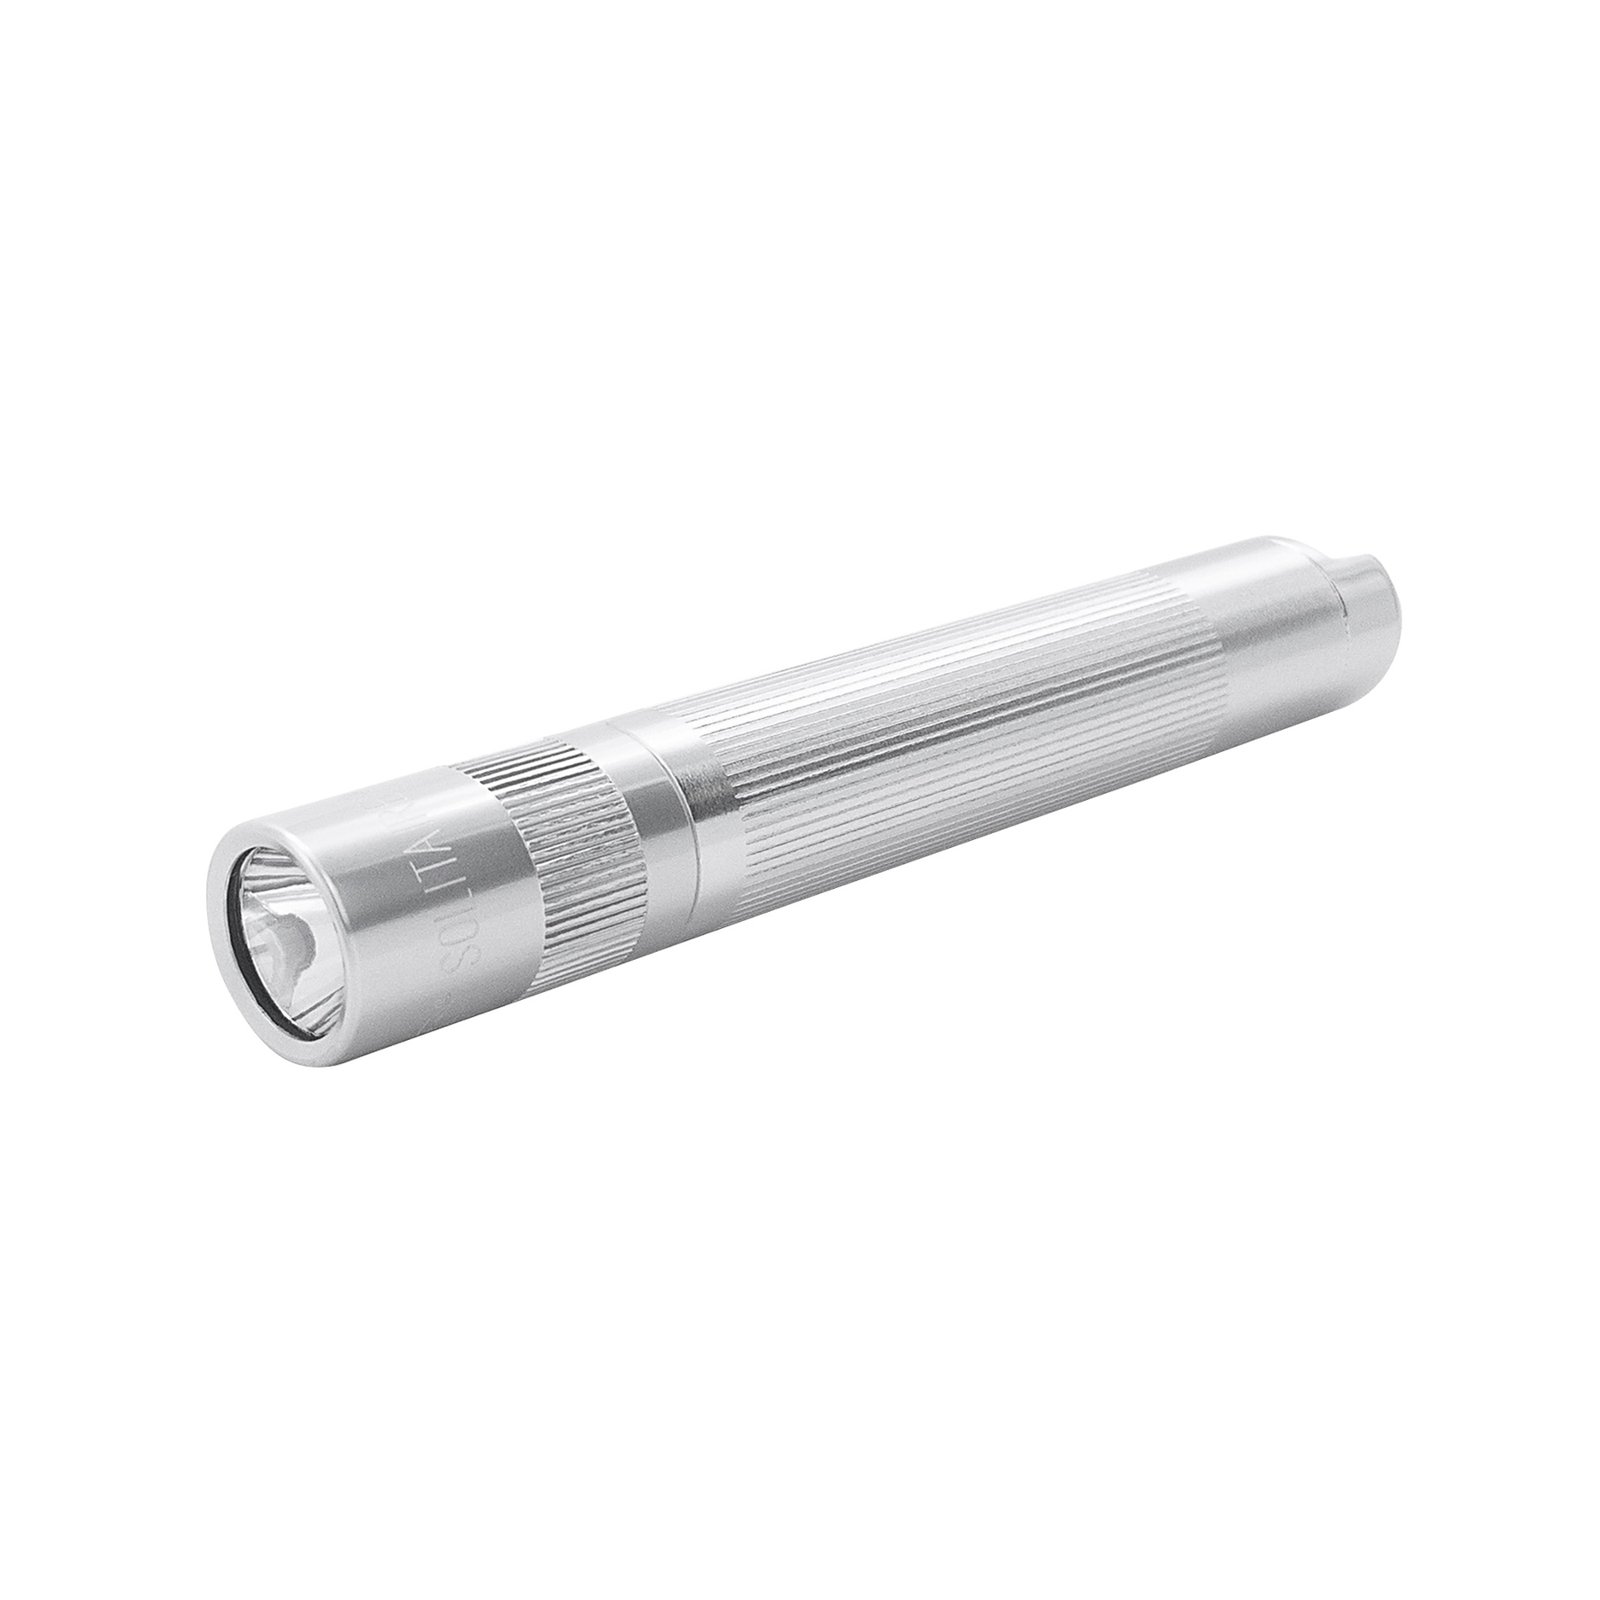 Lampe de poche LED Maglite Solitaire, 1-Cell AAA, Boxer, argenté